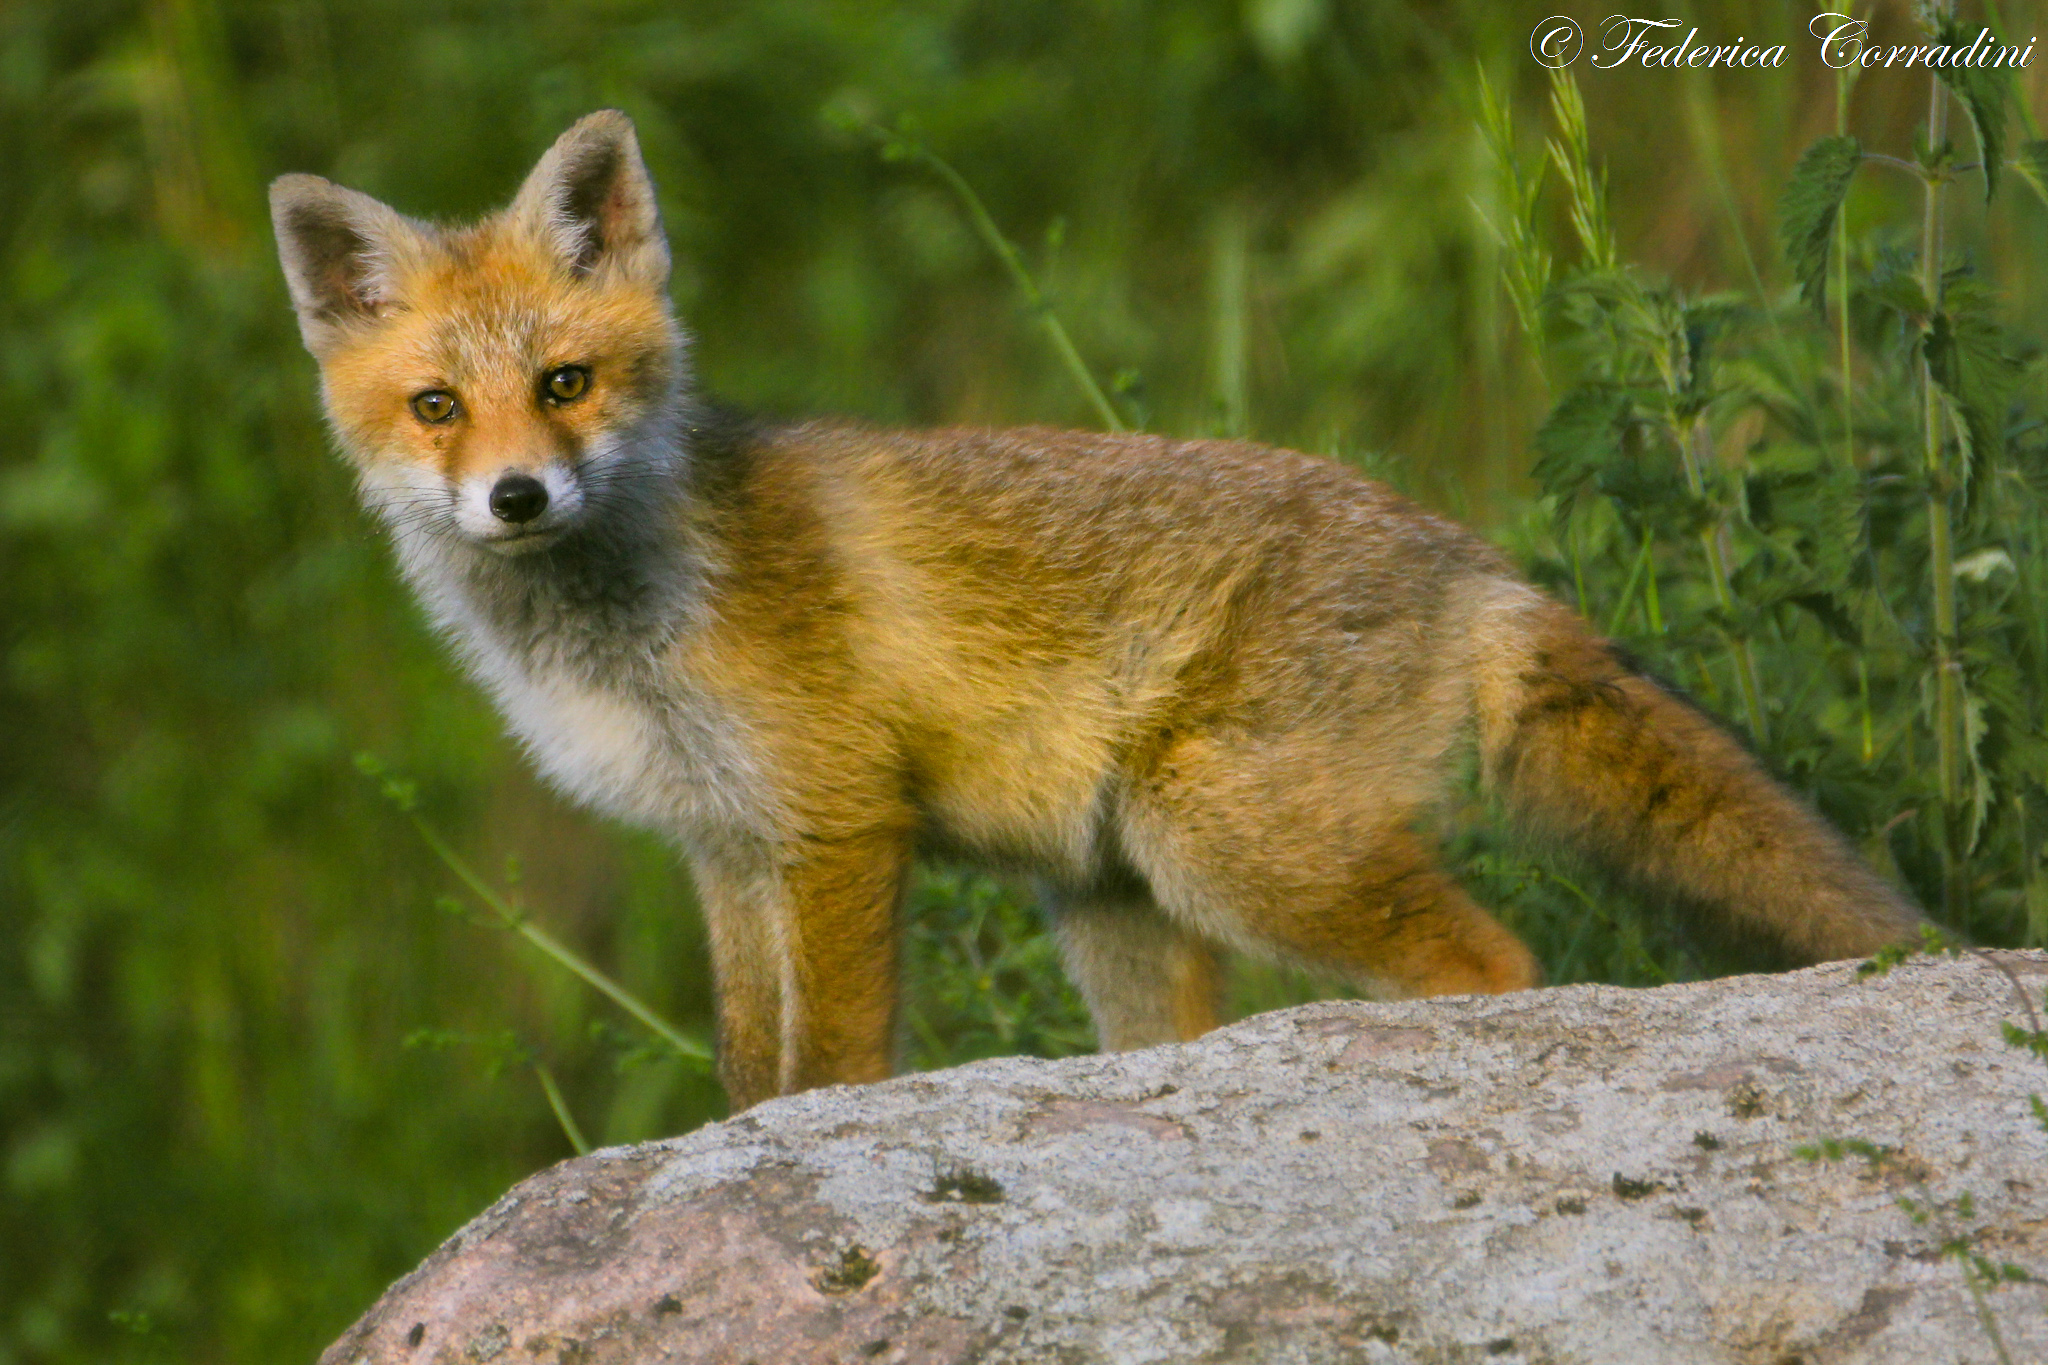 Little Fox...